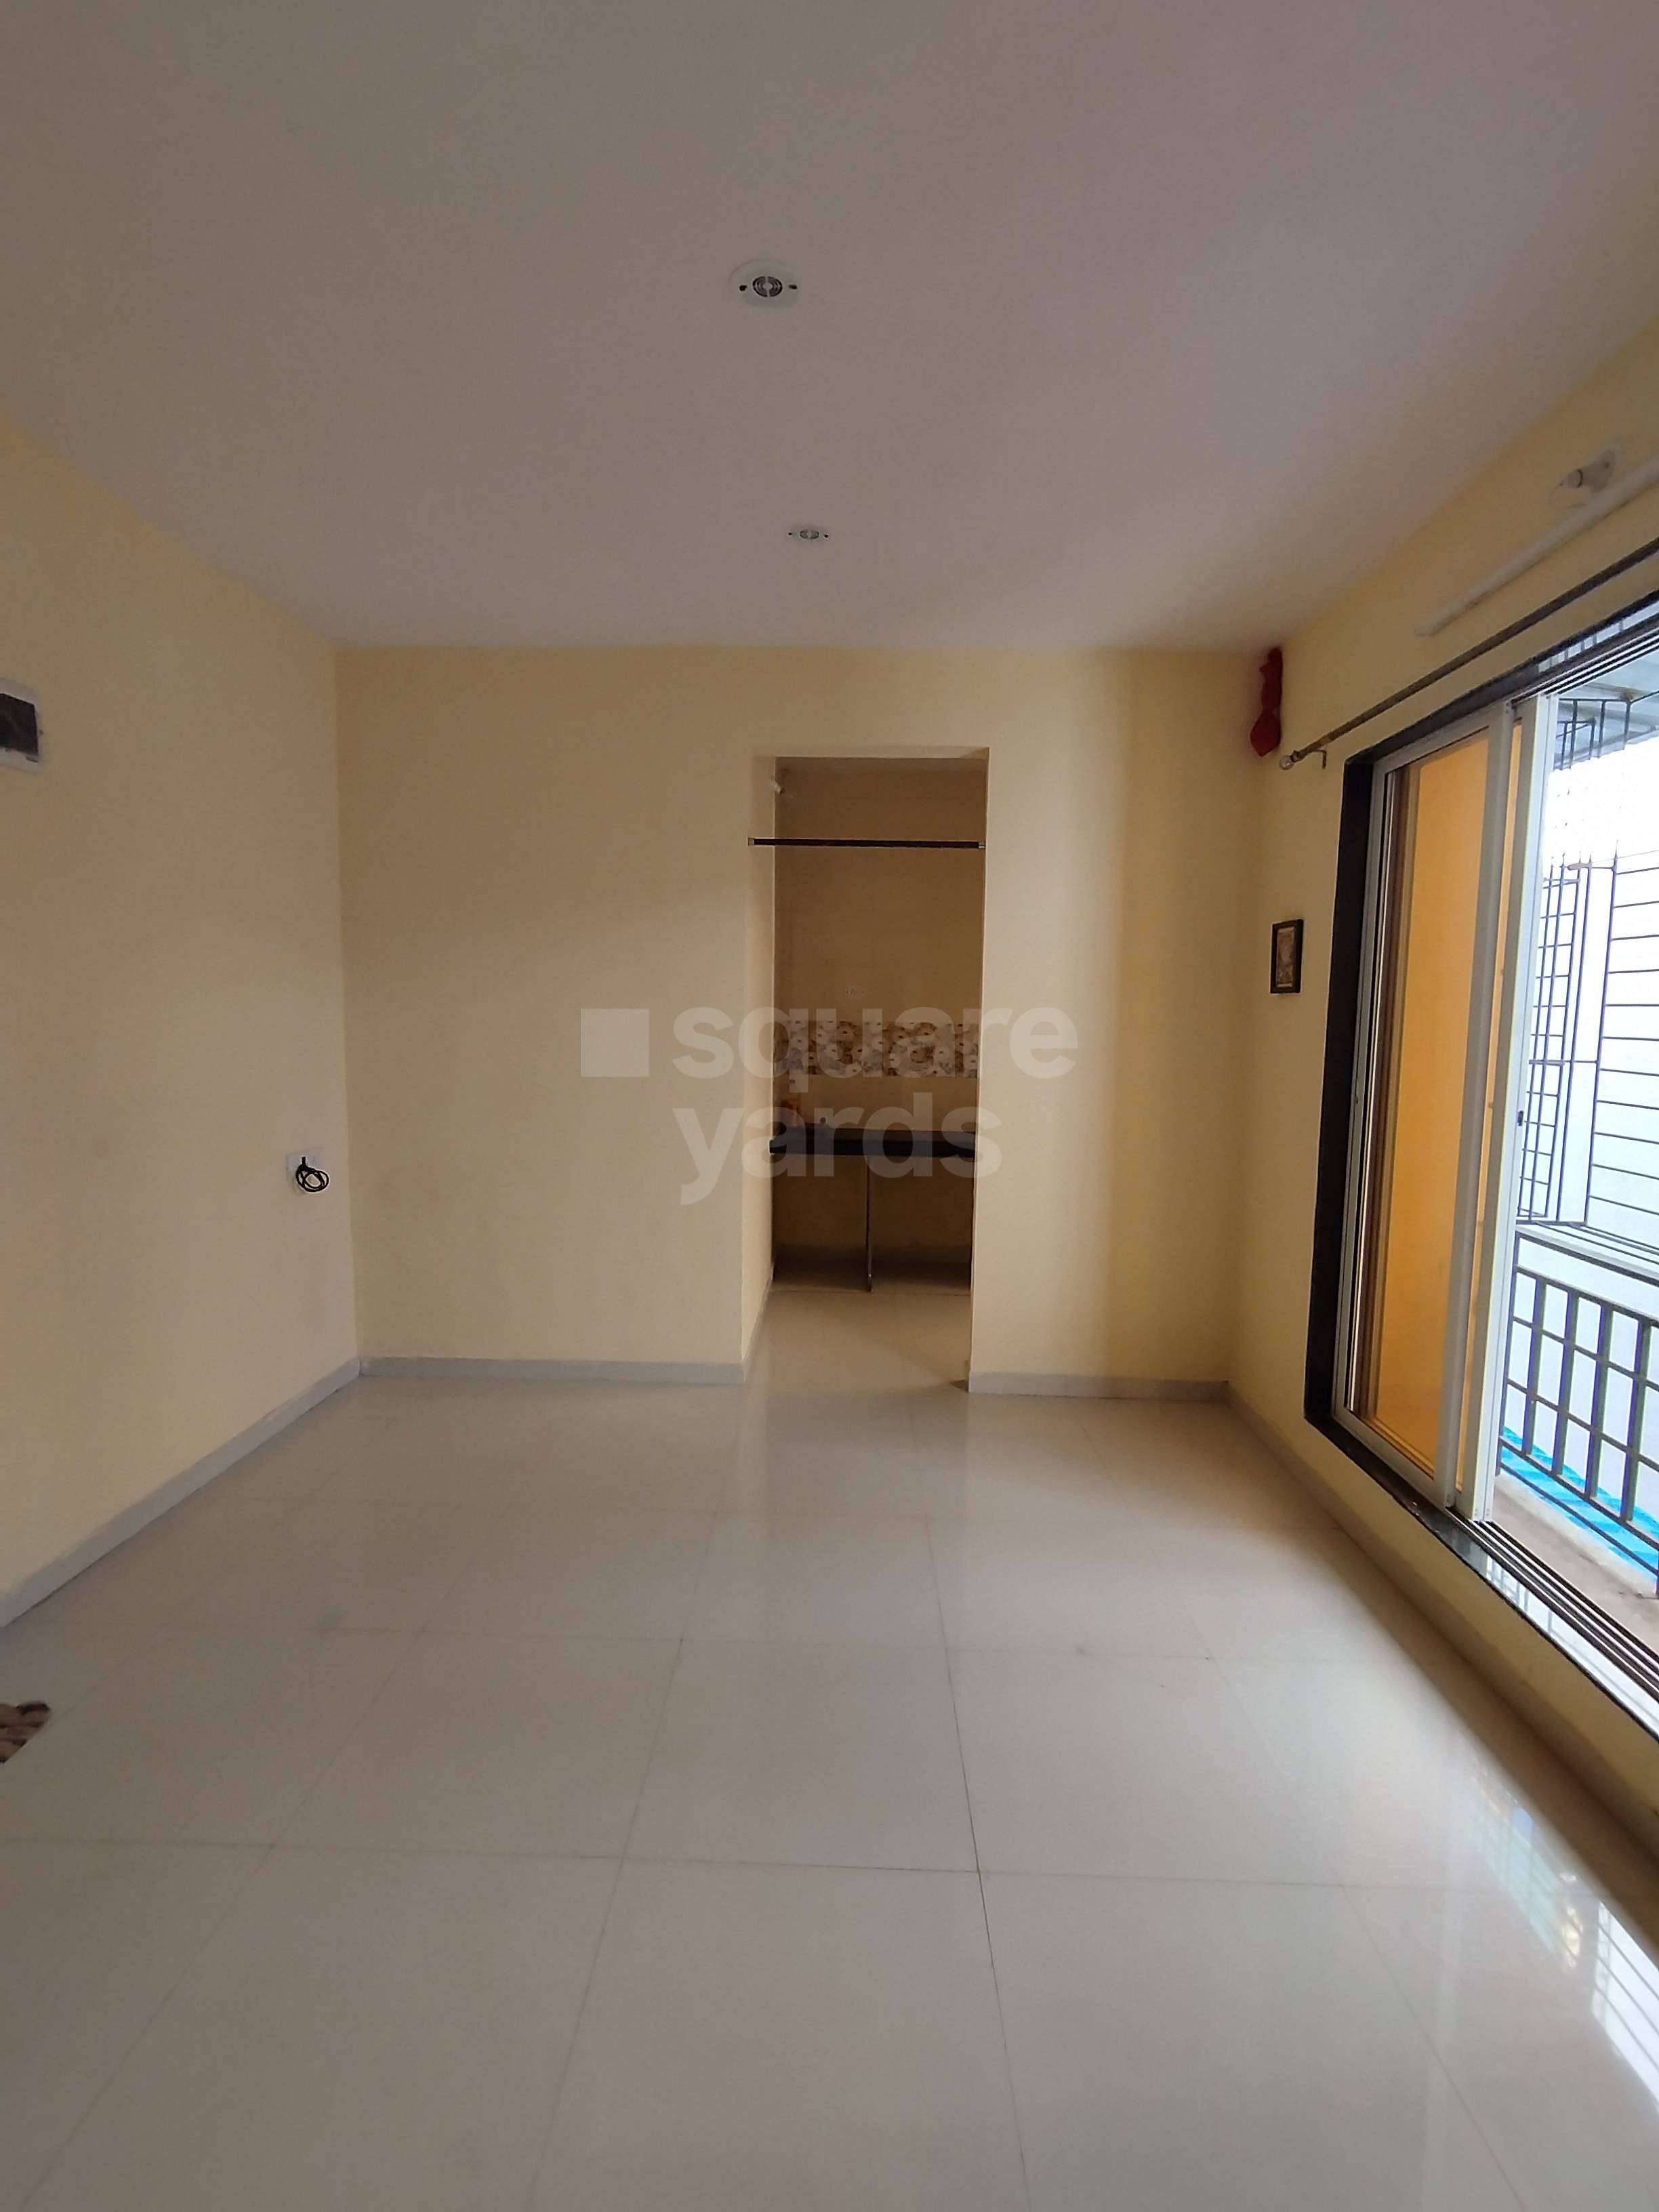 Rental 1 Bedroom 450 Sq.Ft. Apartment In Karanjade Navi Mumbai - 5129484